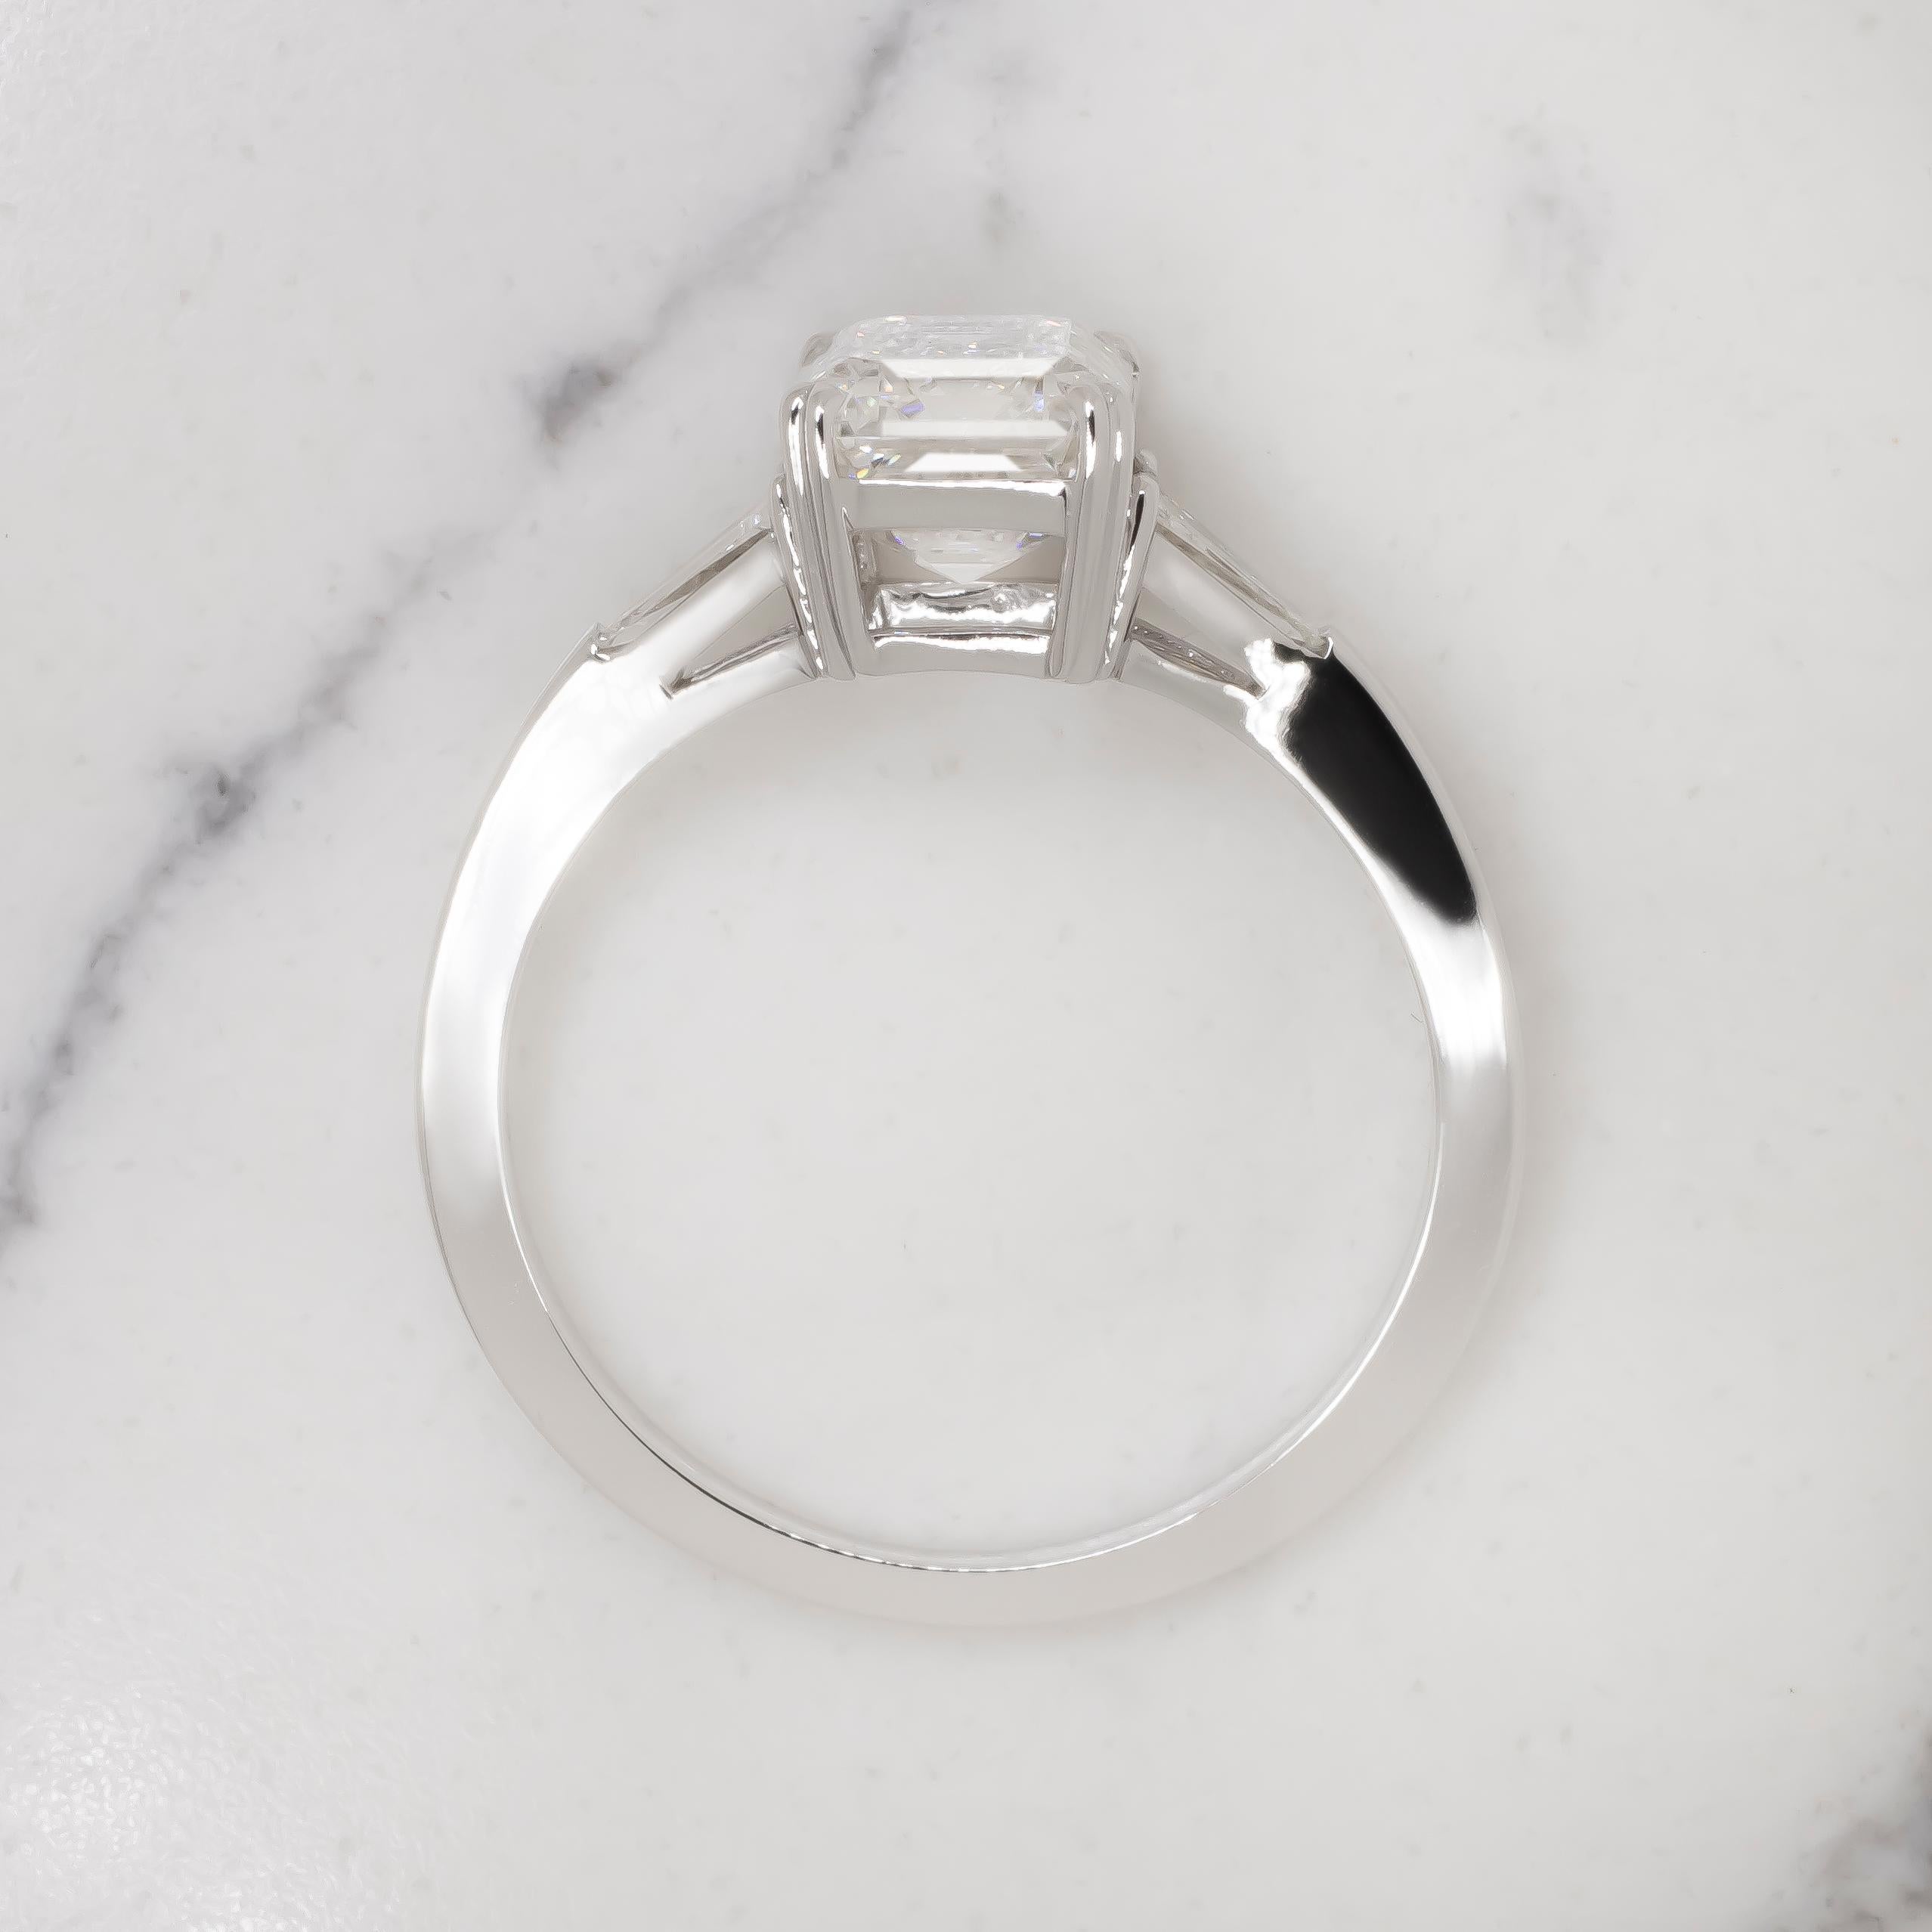 Erhöhen Sie Ihren Stil mit diesem exquisiten GIA-zertifizierten 2,01-Karat-Diamantring mit Smaragdschliff aus 18 Karat Weißgold. Das Herzstück dieses atemberaubenden Schmuckstücks ist ein faszinierender Diamant im Smaragdschliff von 2,01 Karat, der